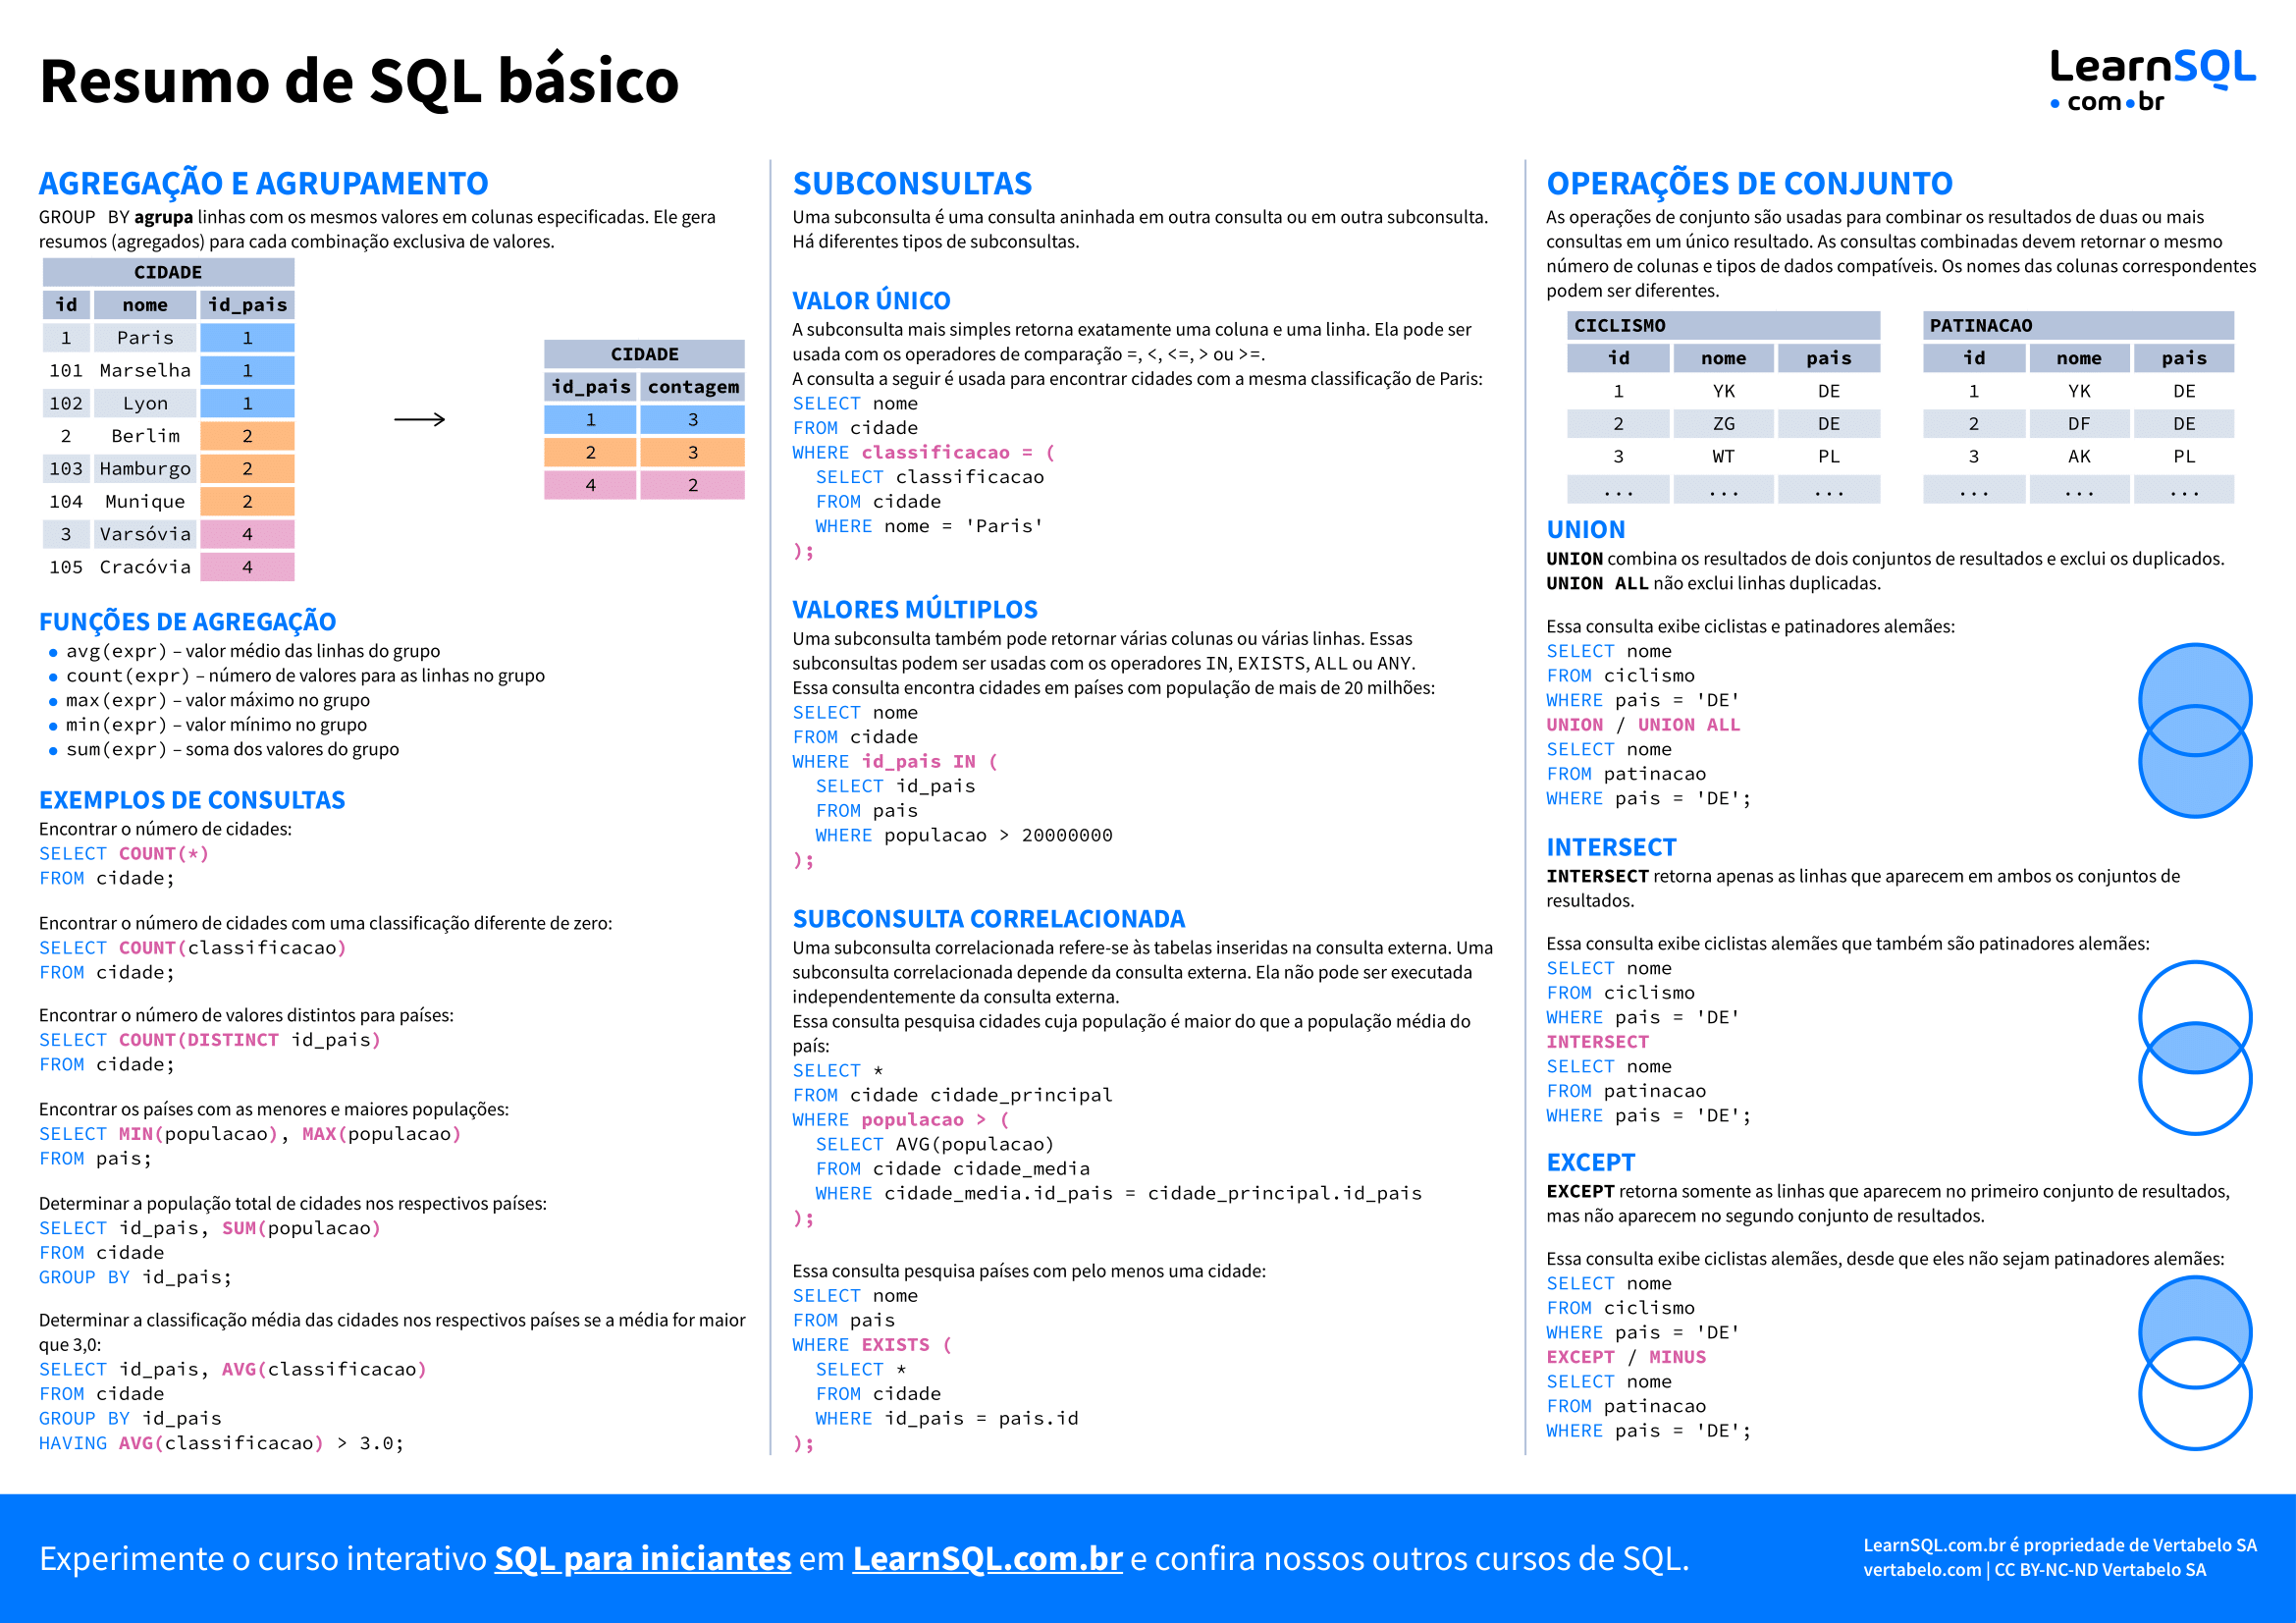 Segunda página do Resumo de conceitos básicos de SQL 